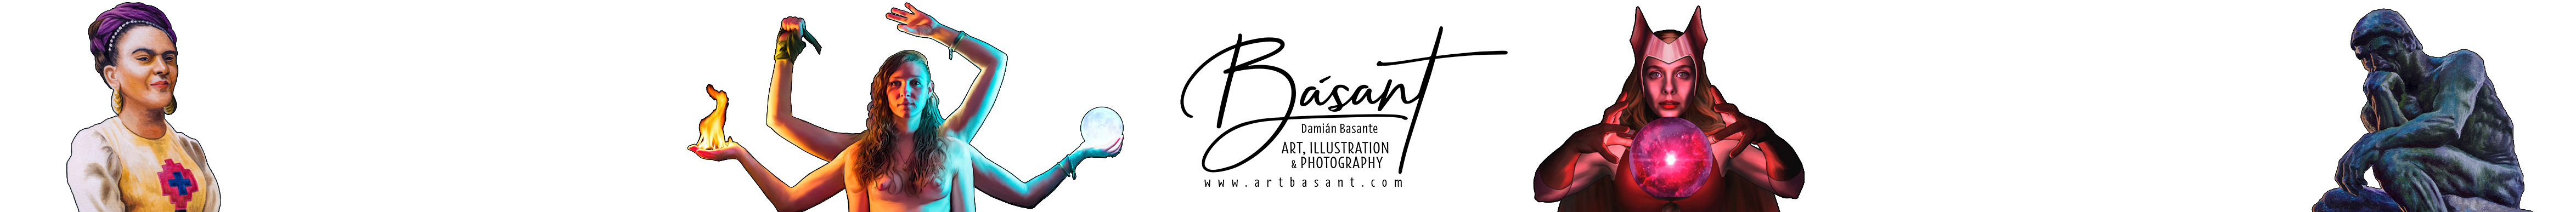 Damian Basante Arbues's profile banner